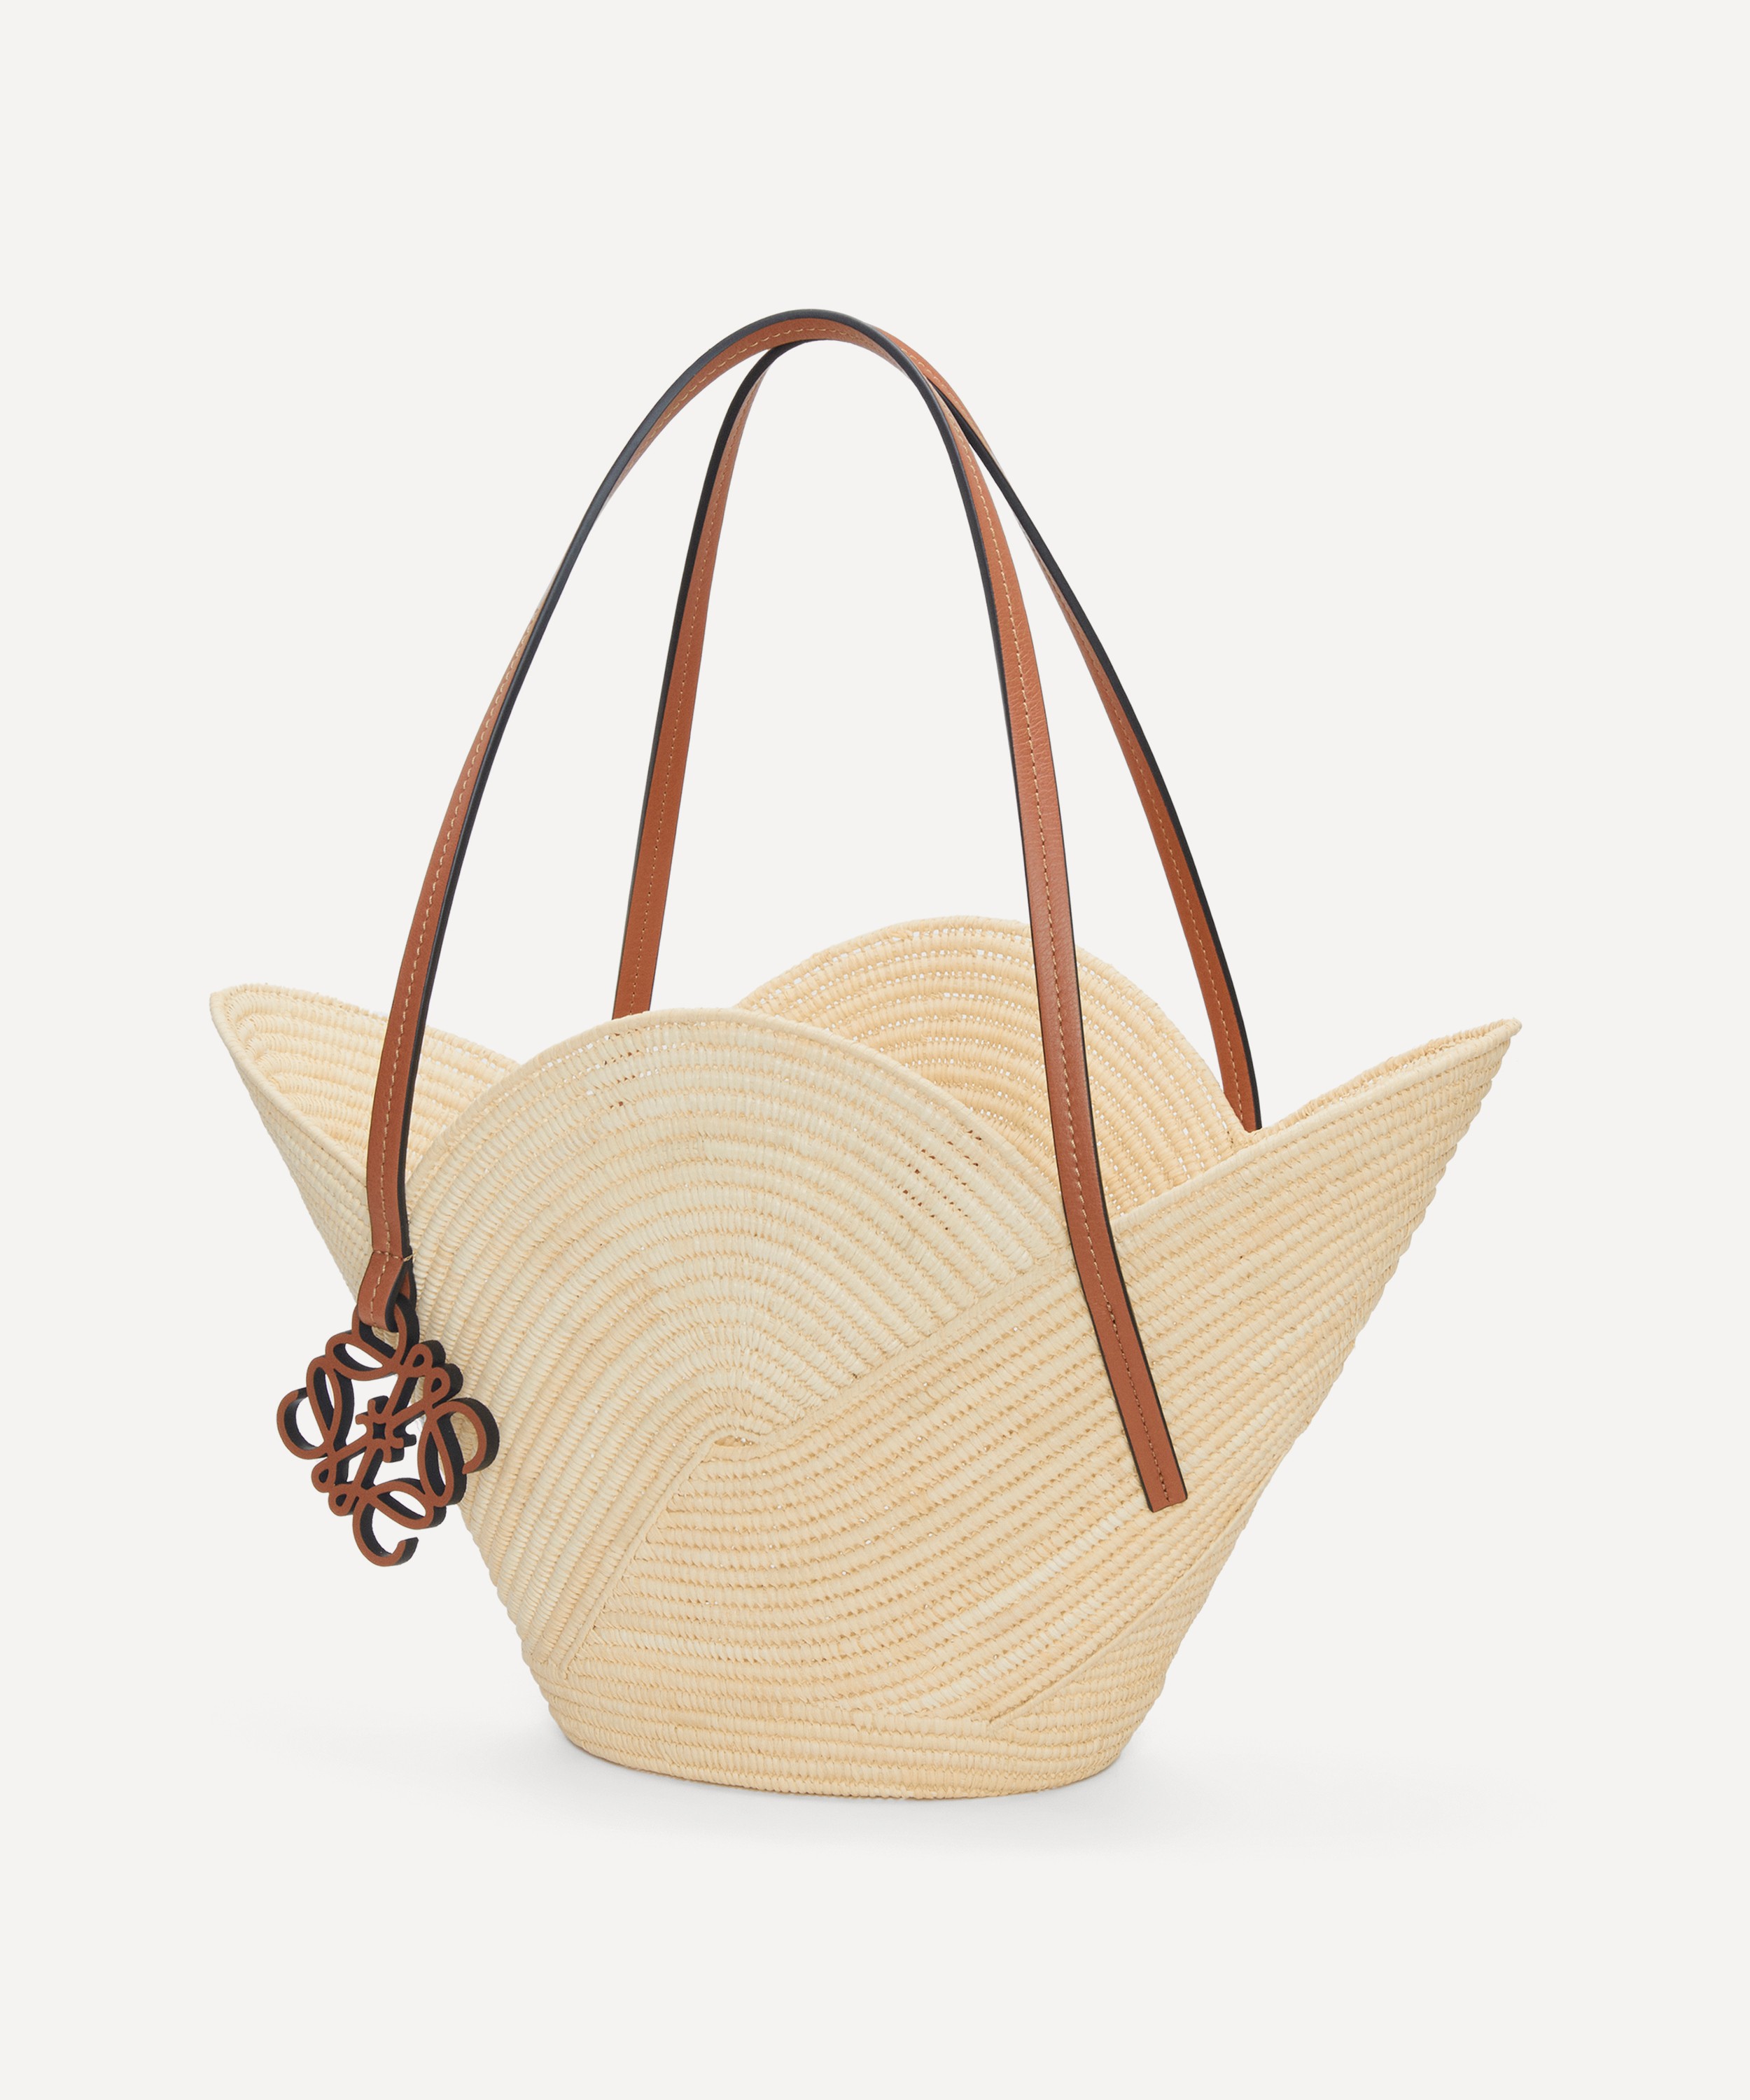 LOEWE Loewe x Paula's Ibiza Small Basket Bag